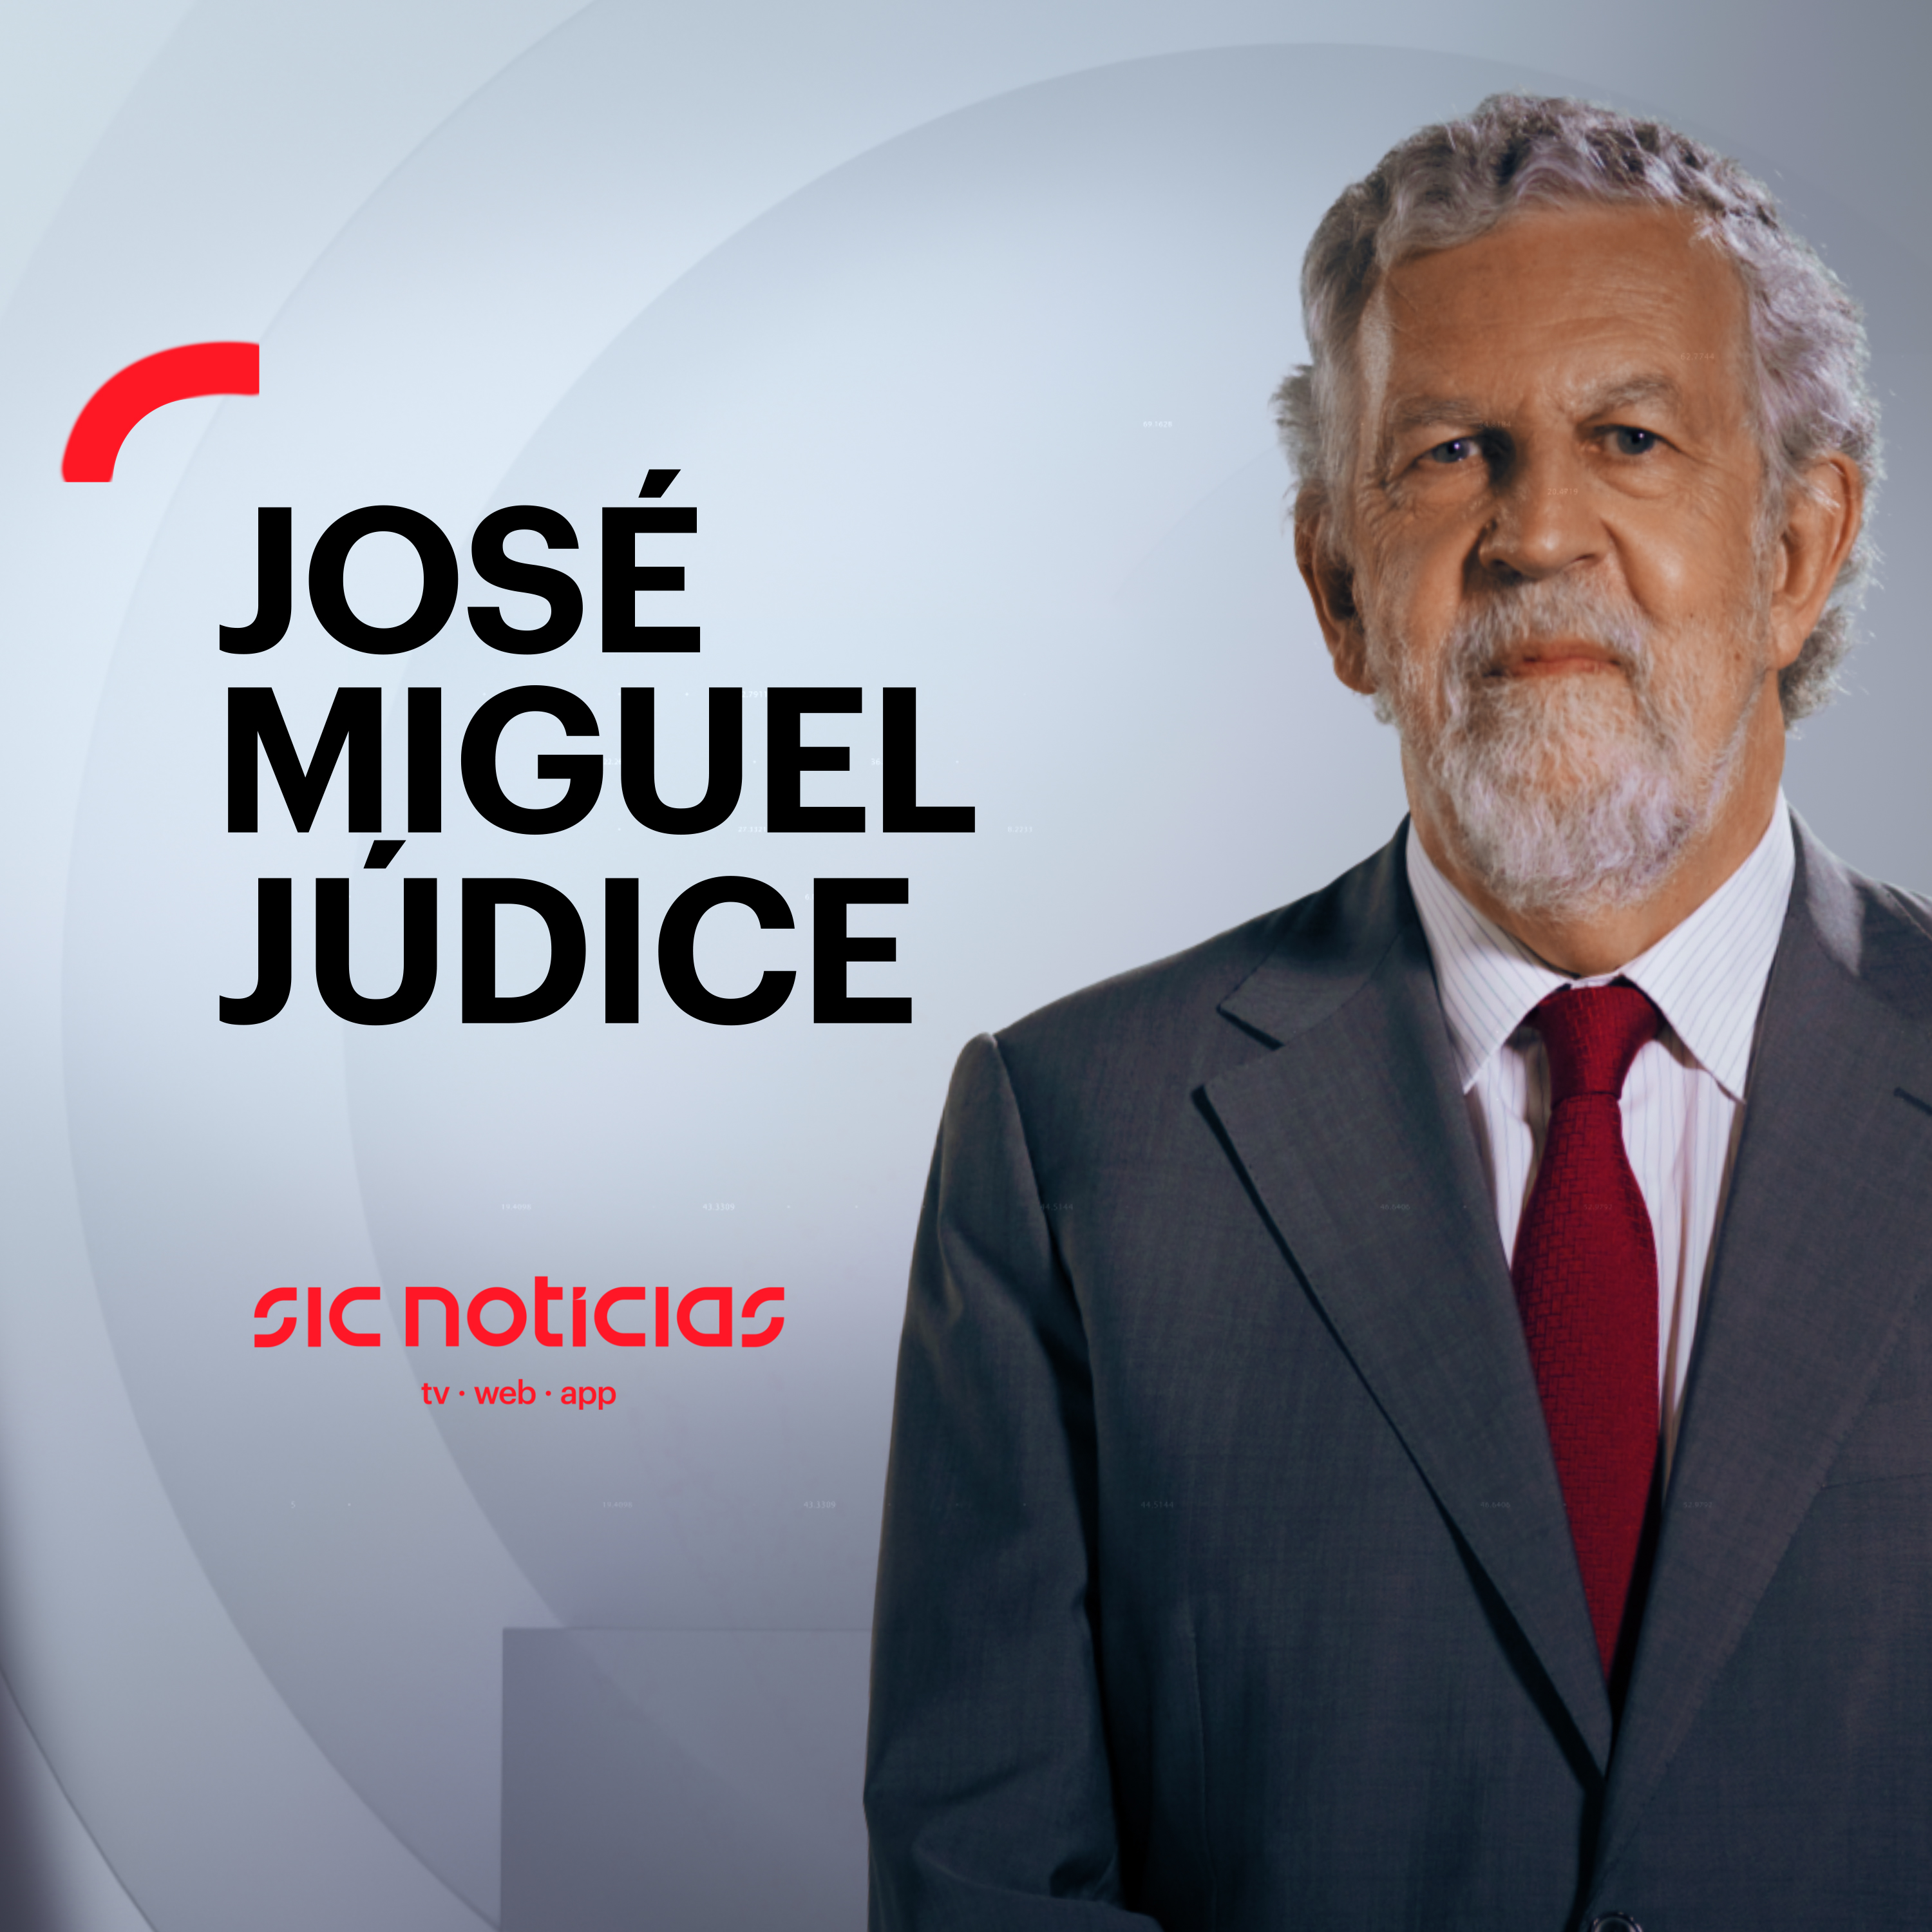 “Marcelo Rebelo de Sousa reage com hipersensibilidade a tudo”